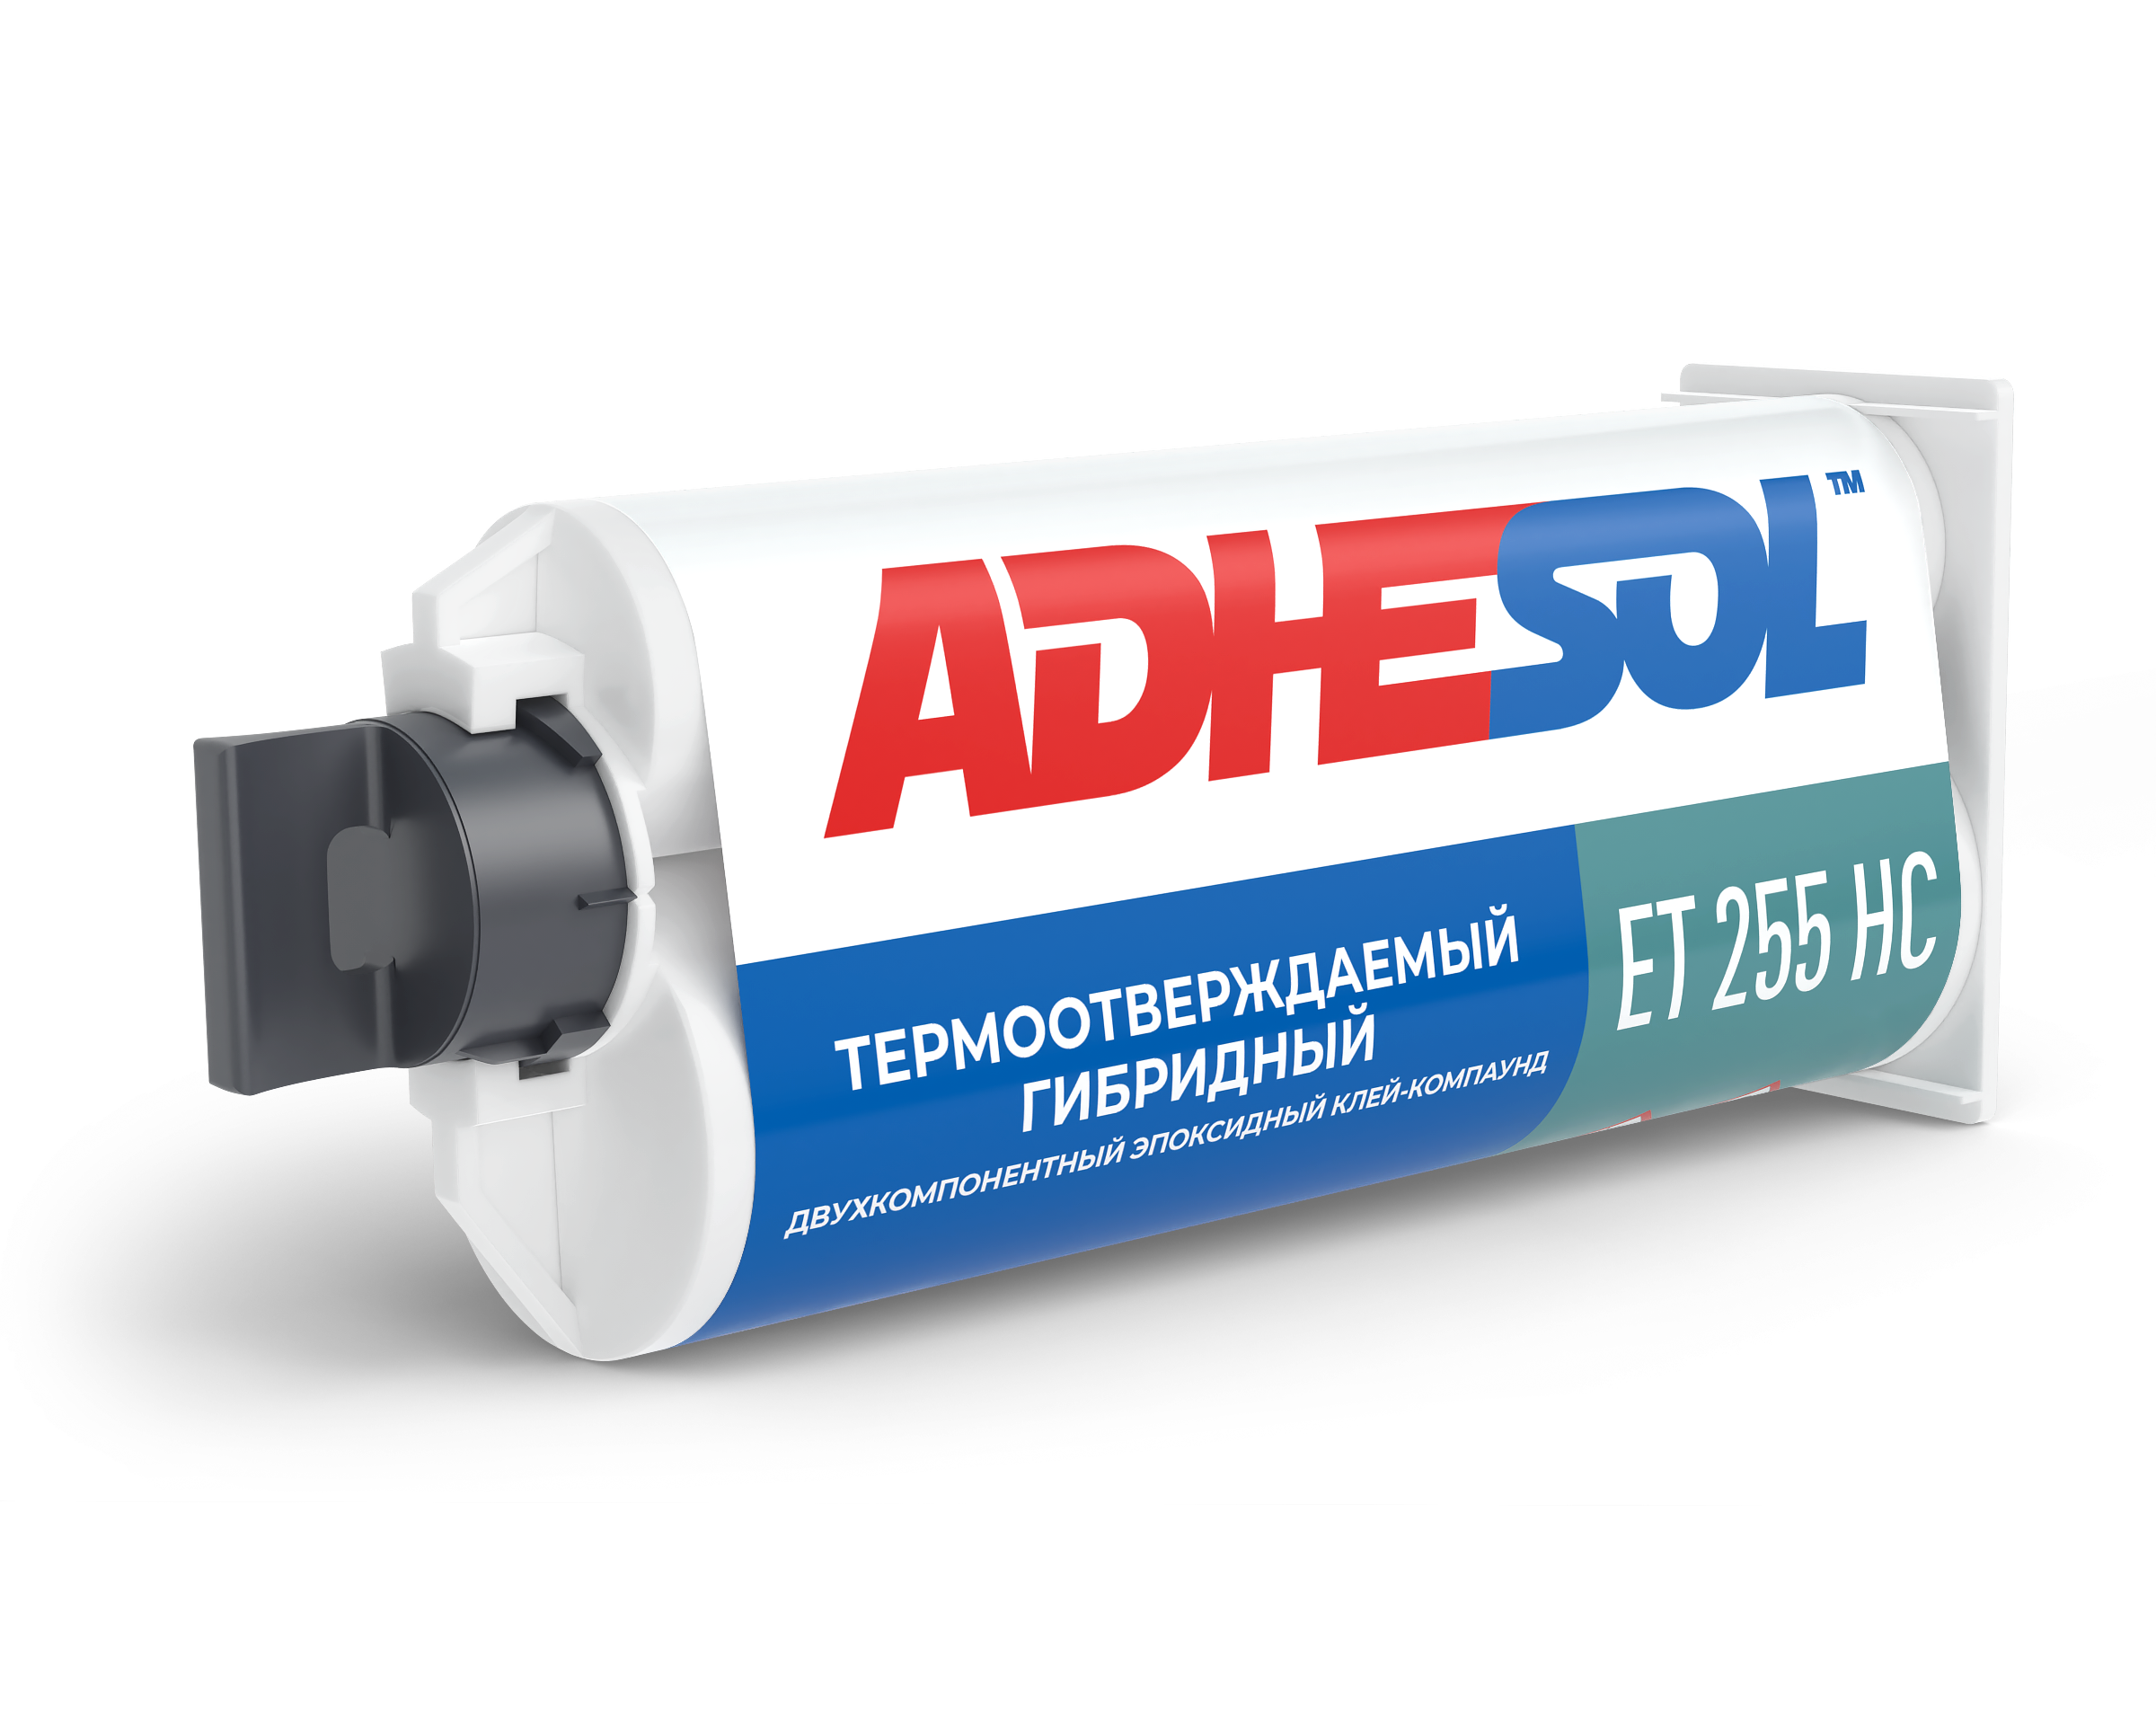 Двухкомпонентный гибридный термоотверждаемый эпоксидный клей-компаунд ADHESOL ET 255 HC 50мл